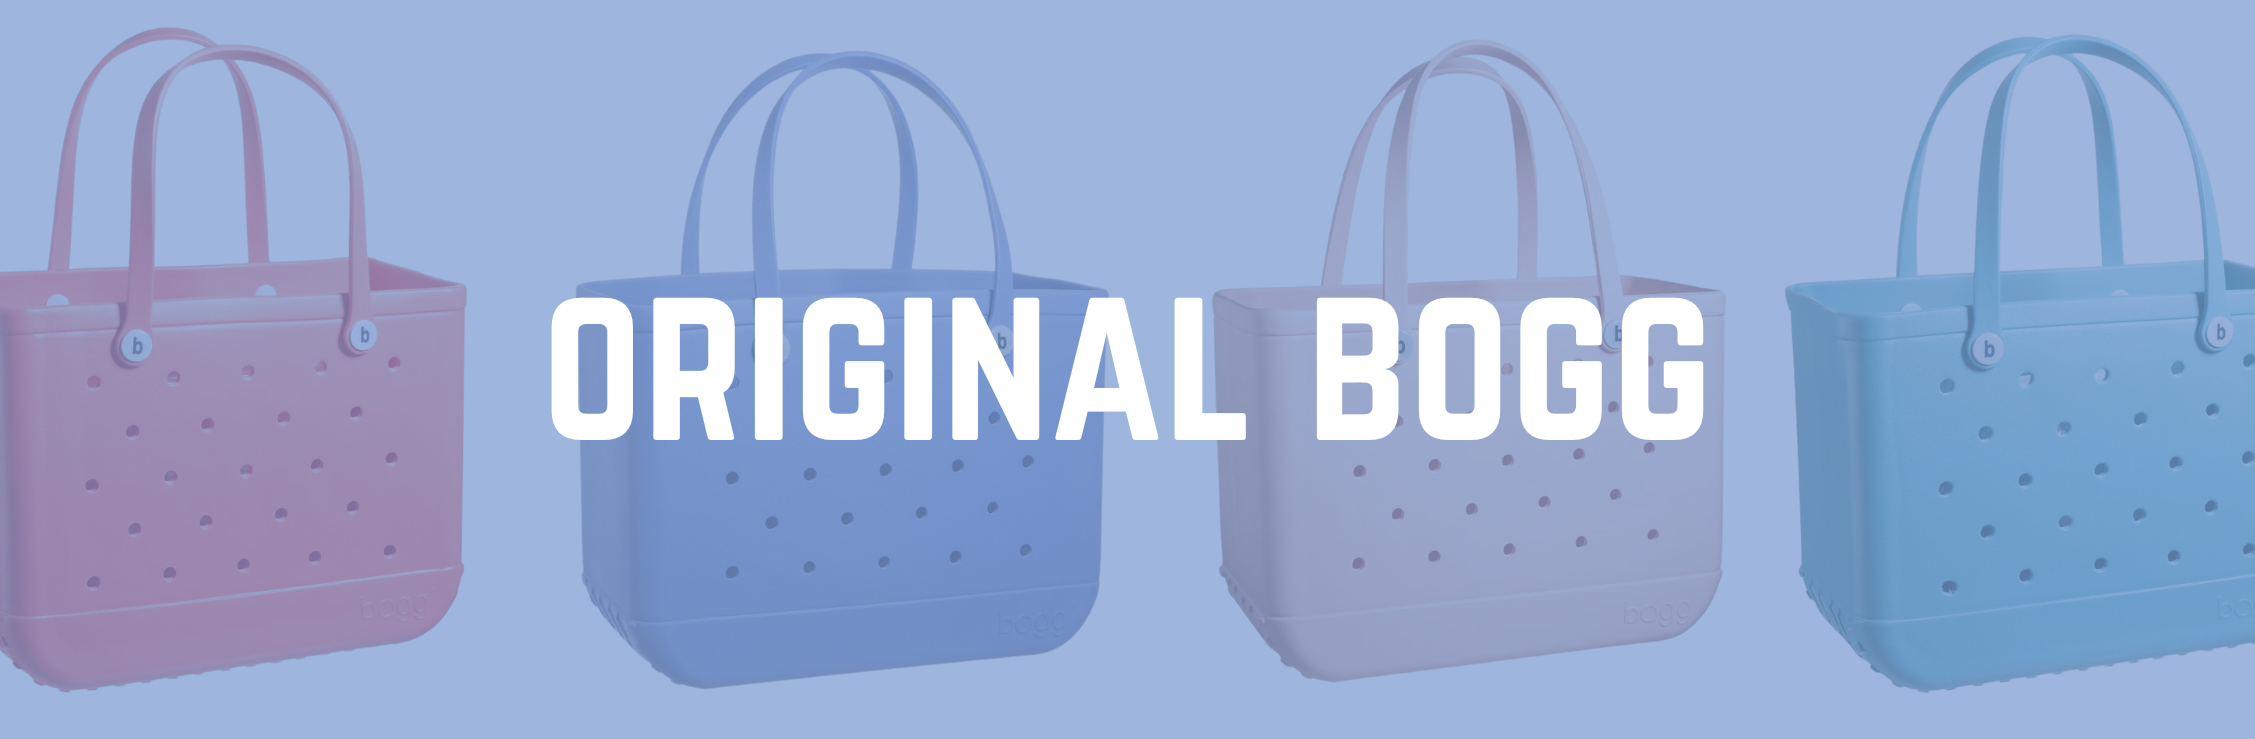 Shop Original Bogg Bag Tote Bags.